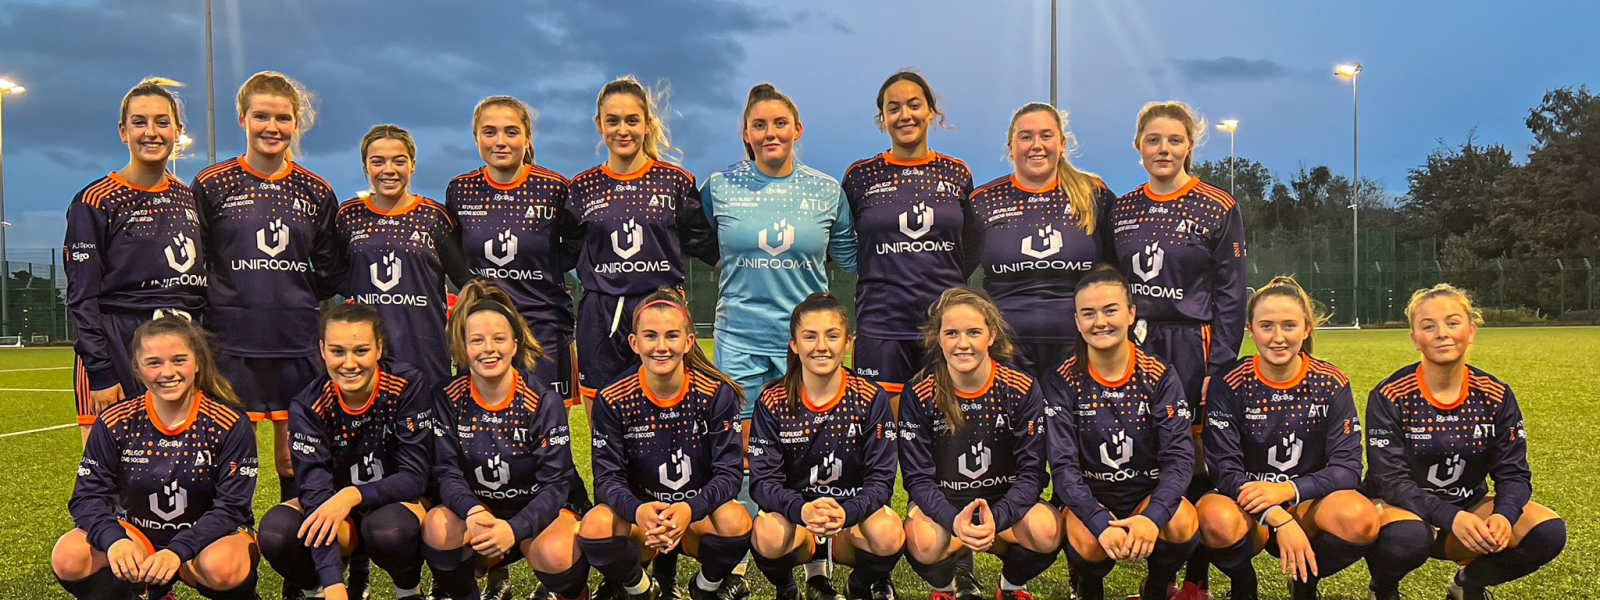 ATU Sligo Ladies Soccer team